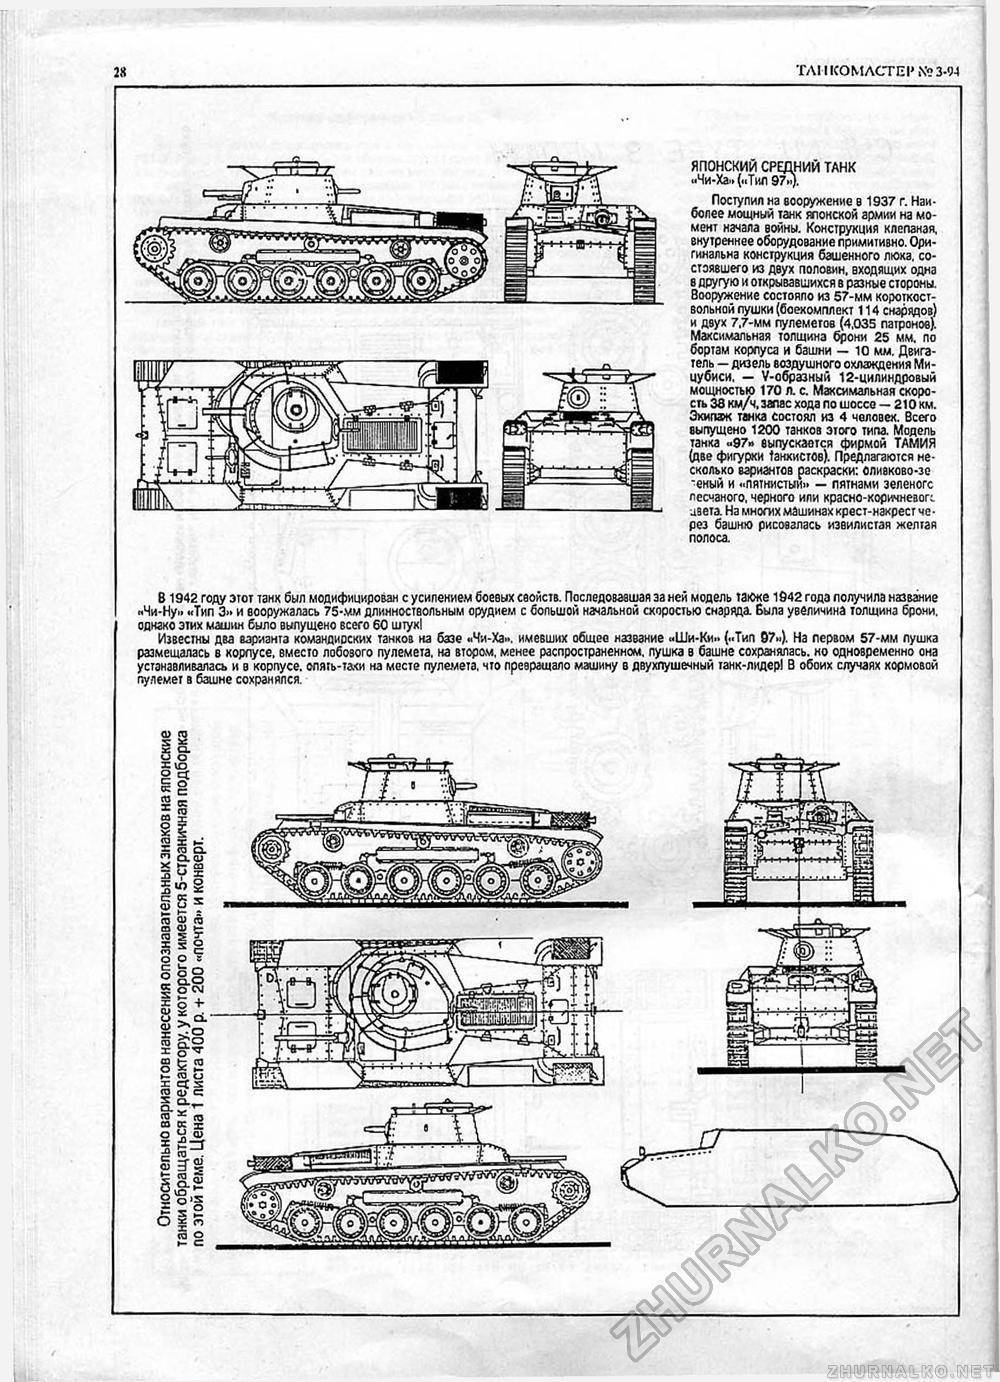 Type 91 heavy — global wiki. wargaming.net